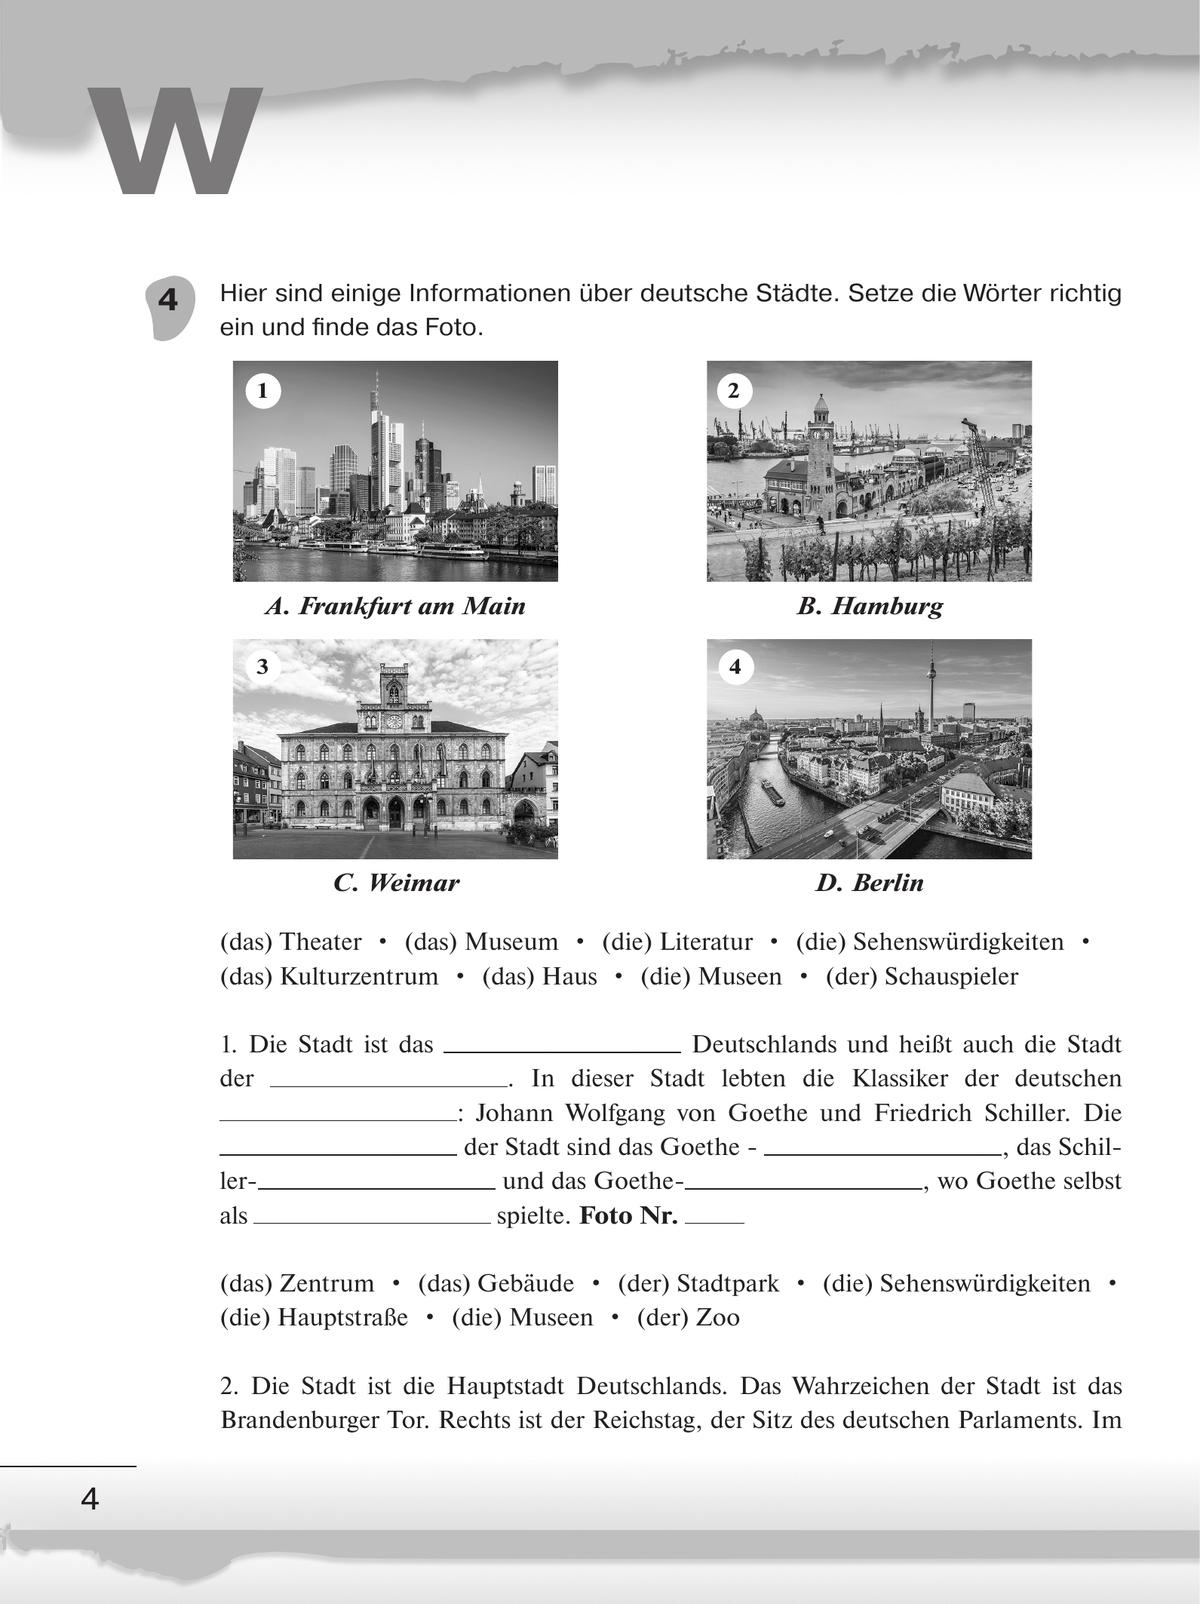 Немецкий язык. Рабочая тетрадь. 6 класс 6